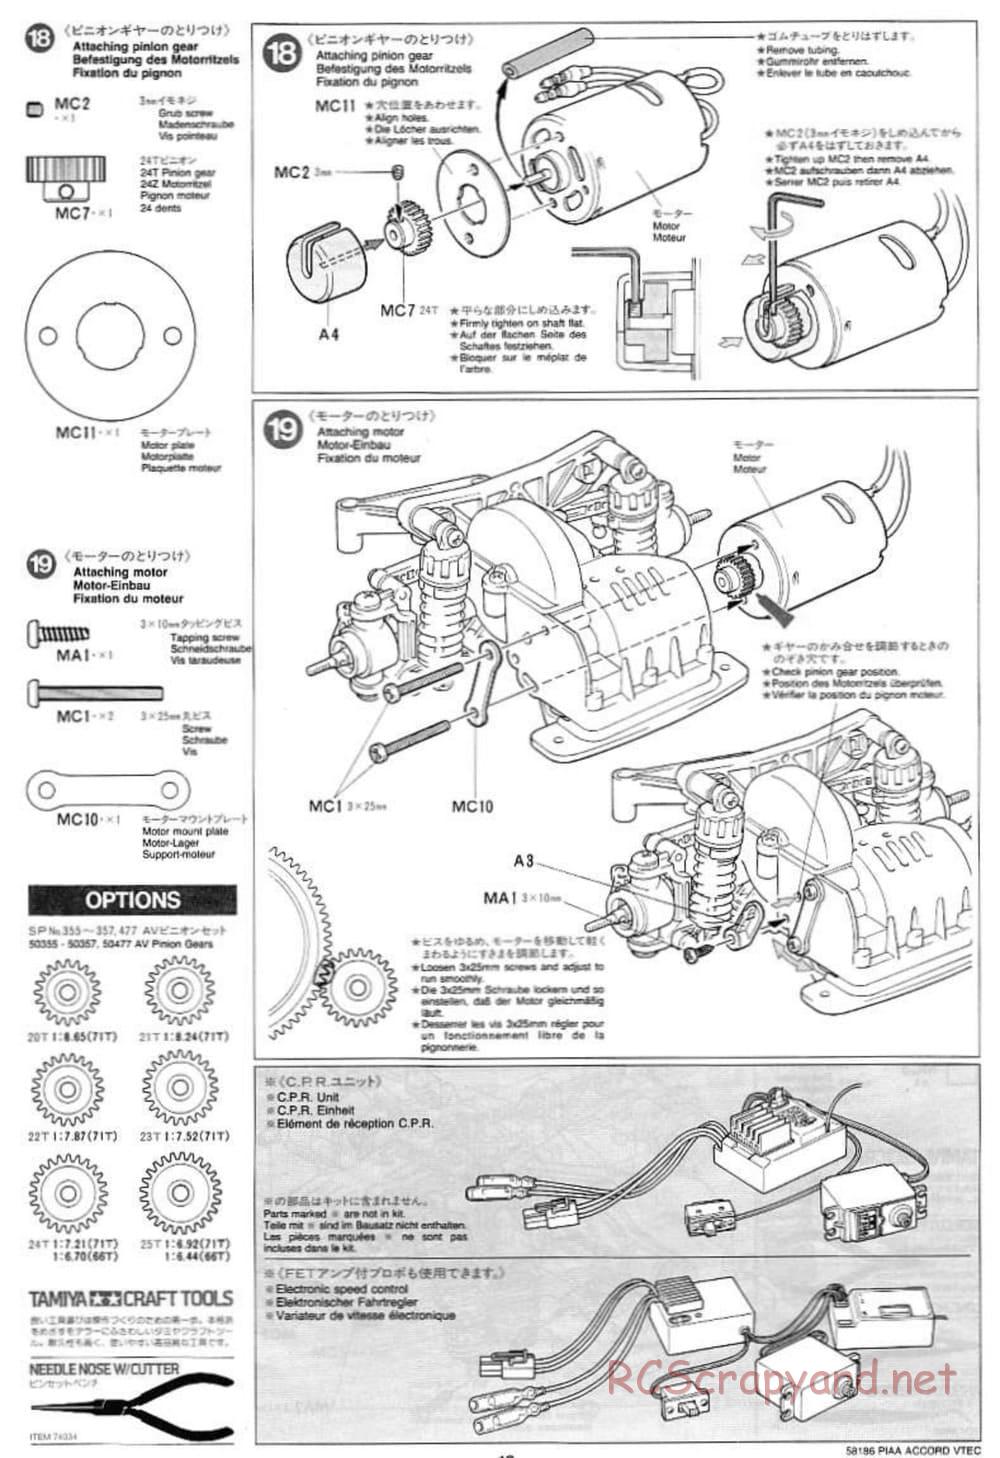 Tamiya - PIAA Accord VTEC - FF-01 Chassis - Manual - Page 10